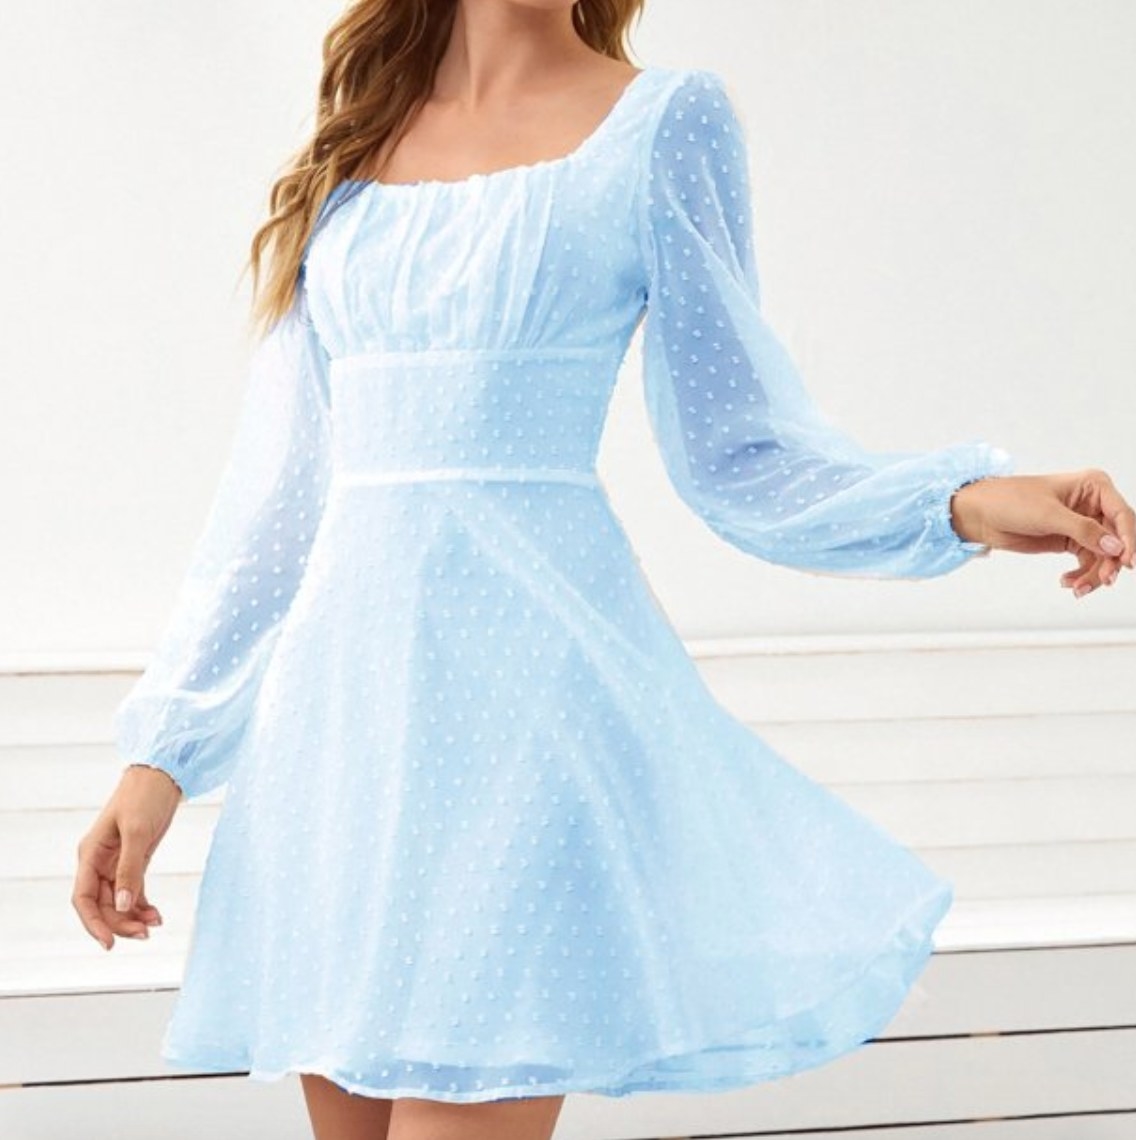 a model wearing the long sleeve mini dress in baby blue